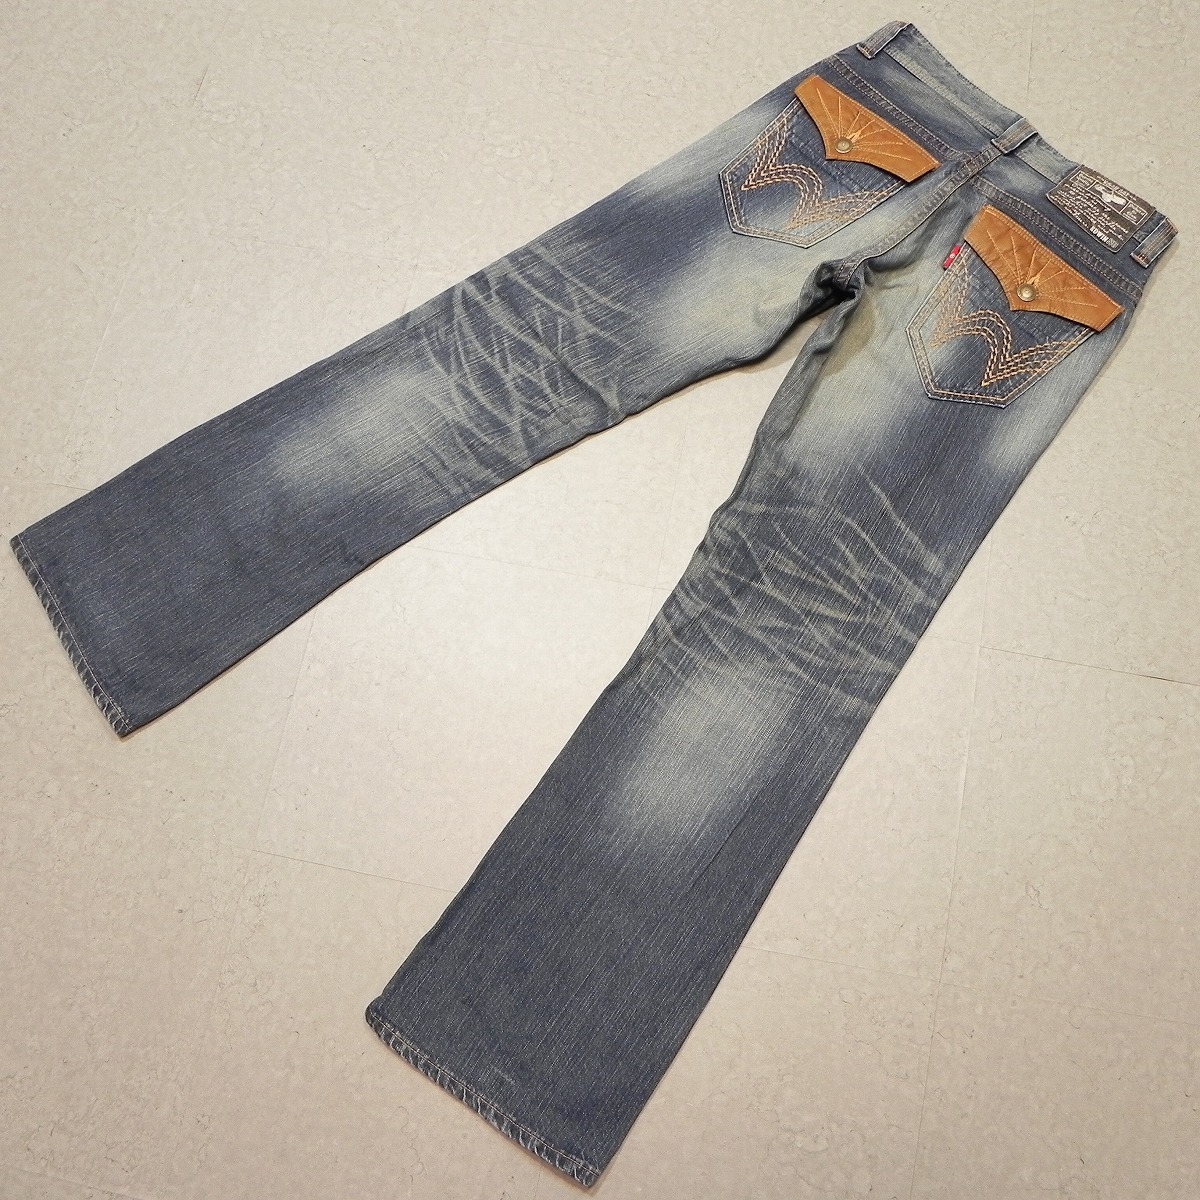 j55* сделано в Японии EDWIN Edwin 431XVS USED обработка * flair ботинки cut Western Denim брюки джинсы Sz.30 быстрое решение *